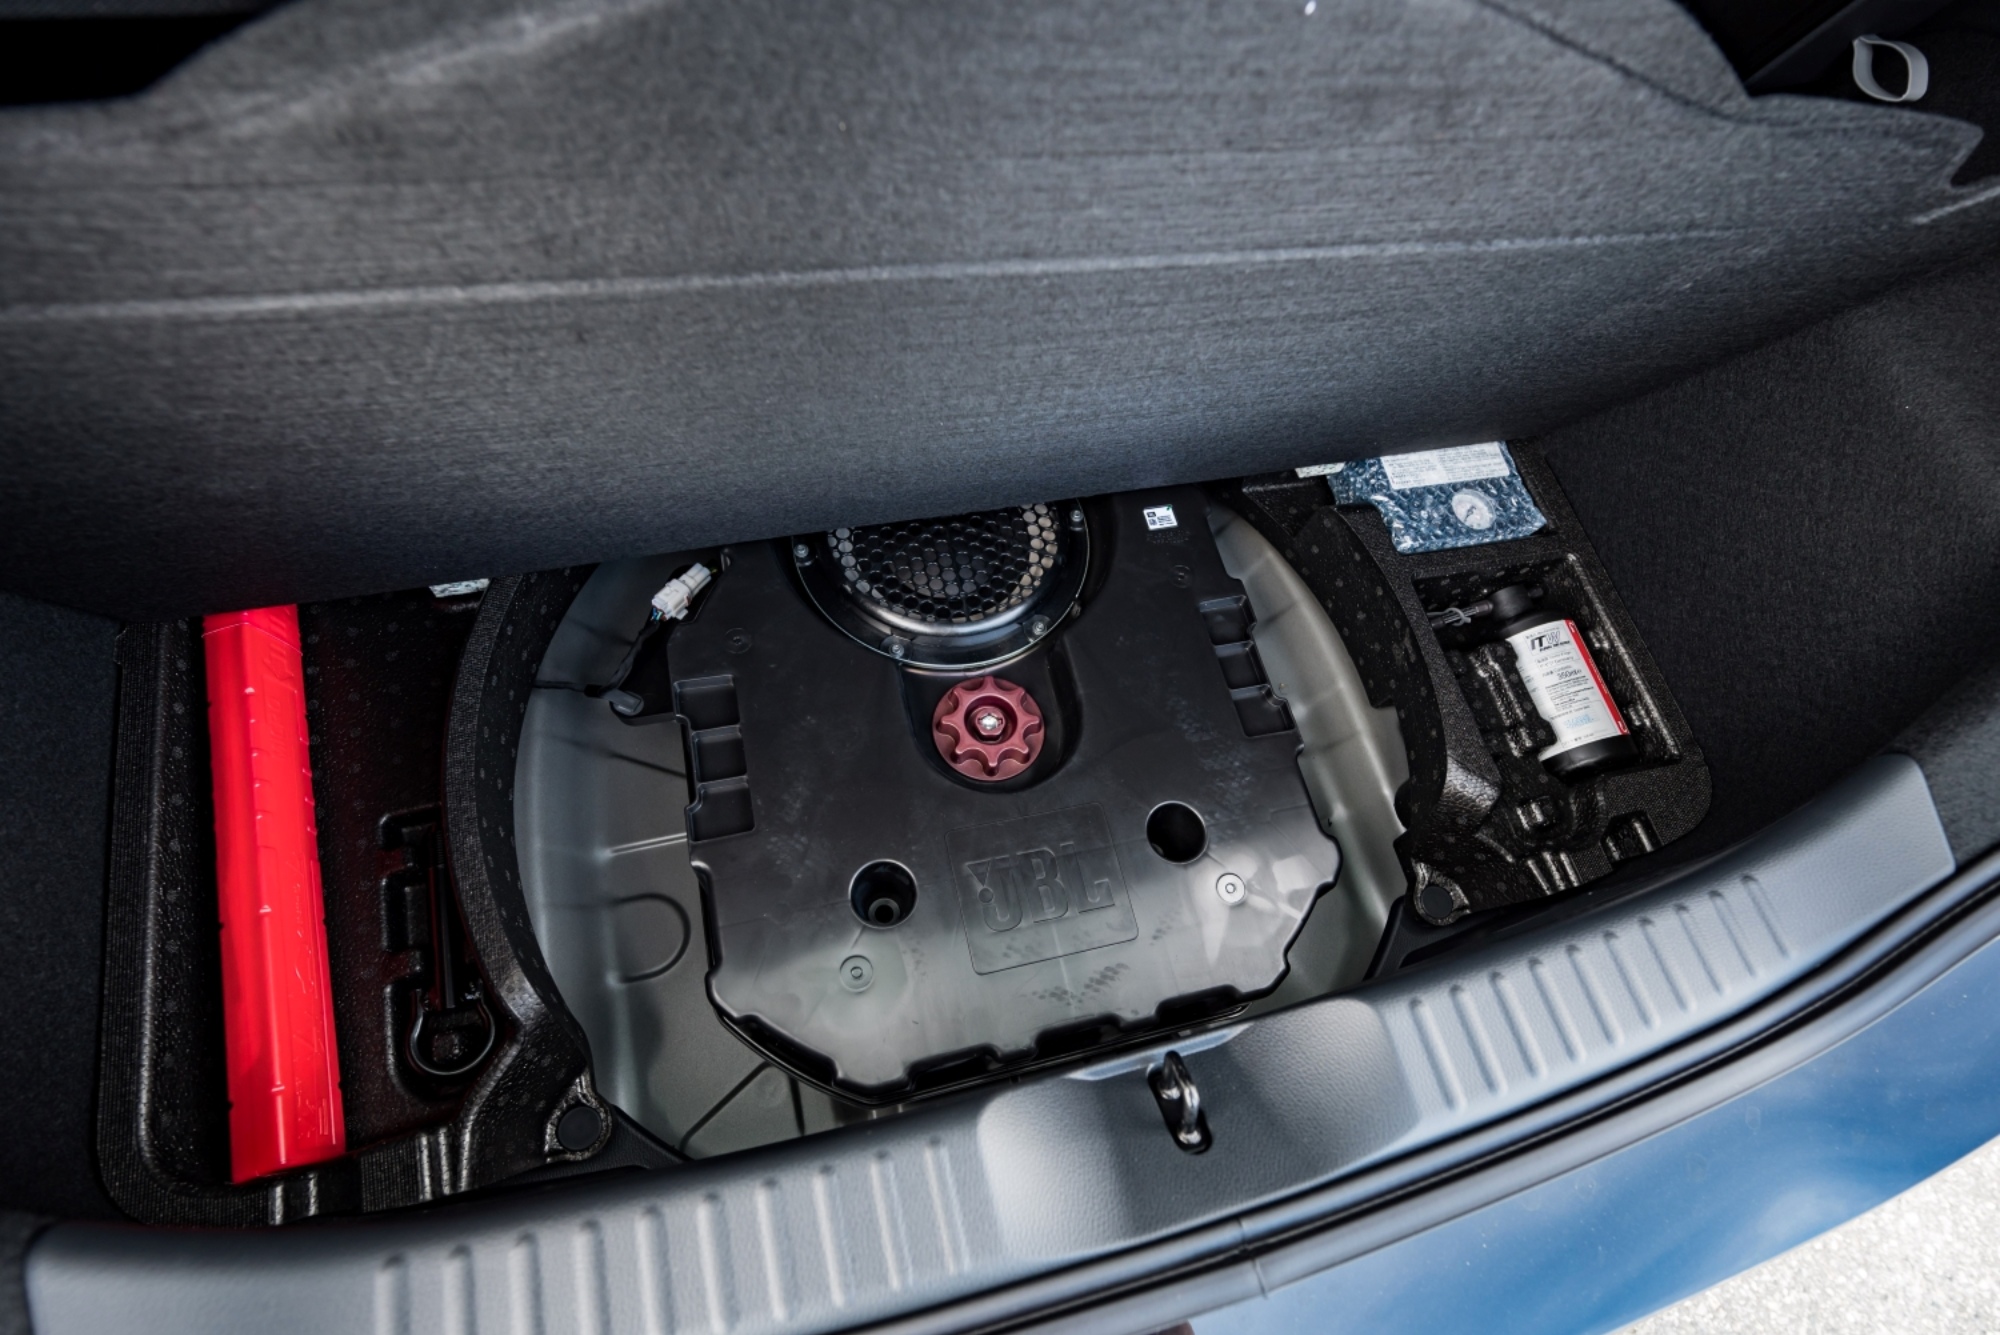 ÚJ!! Toyota Aygo X Cross Limited Targa JBL bérautó autóbérlés autókölcsönzés bullrent élményvezetés